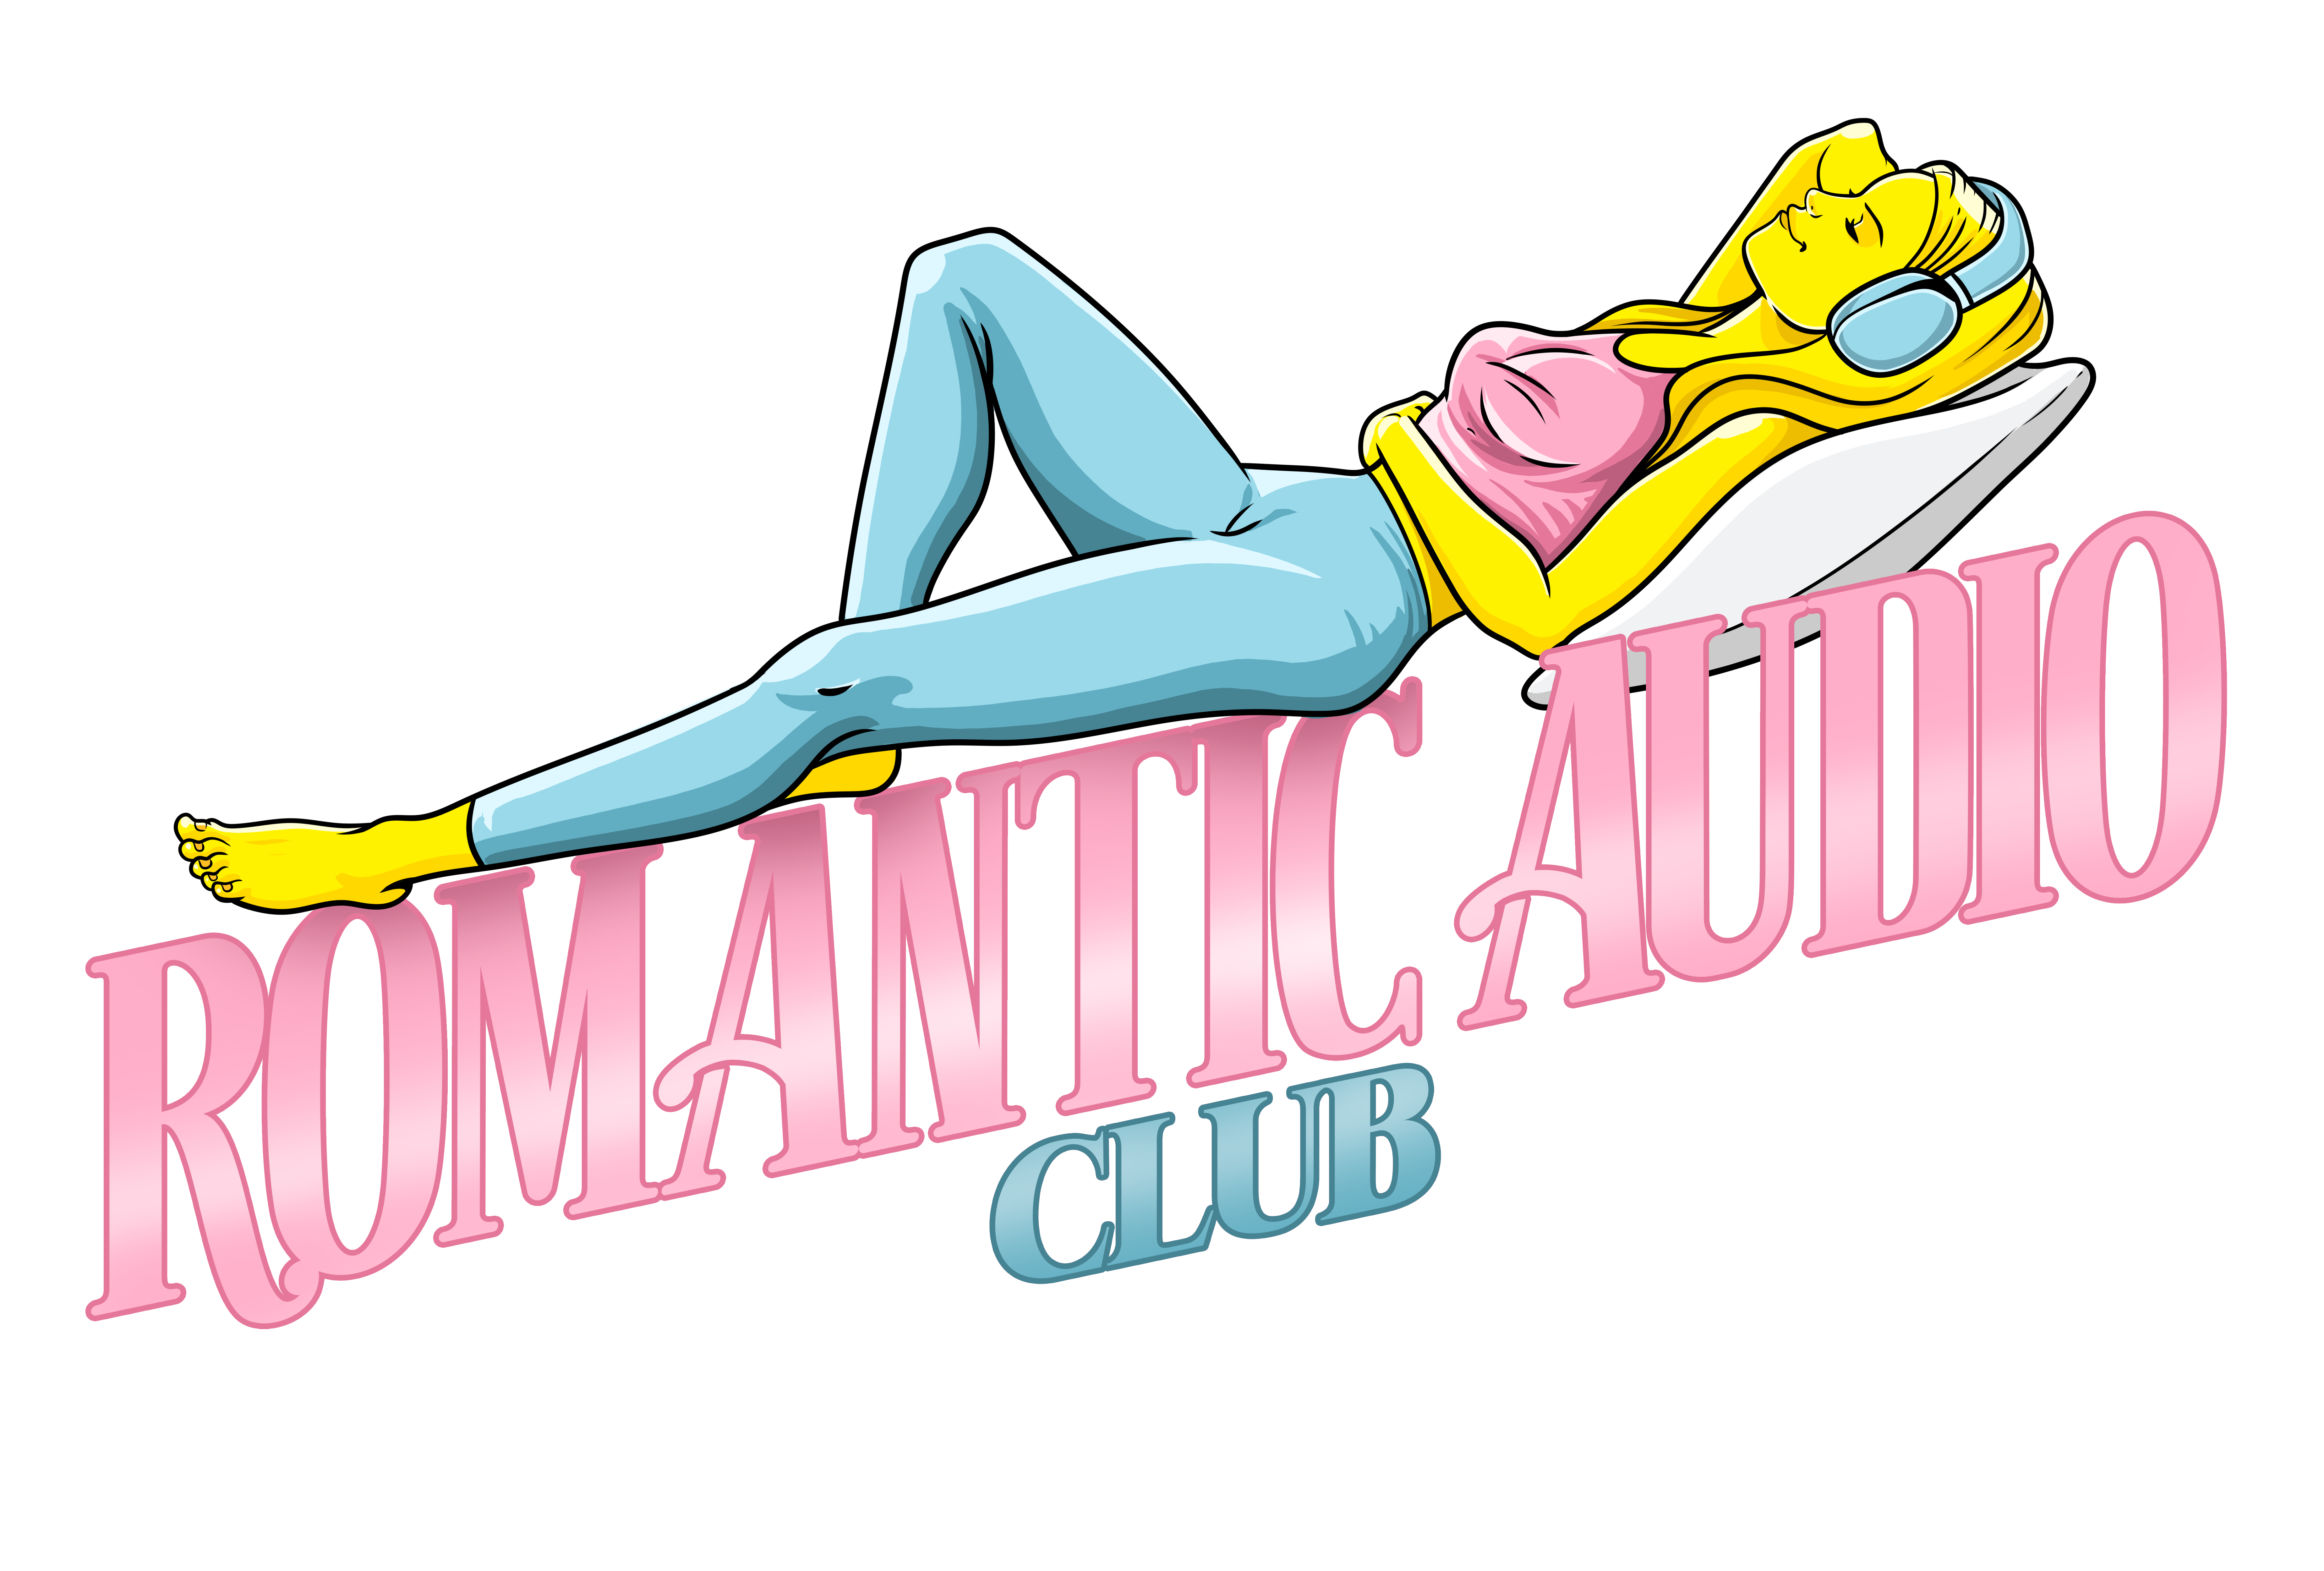 Romantic Audio Club